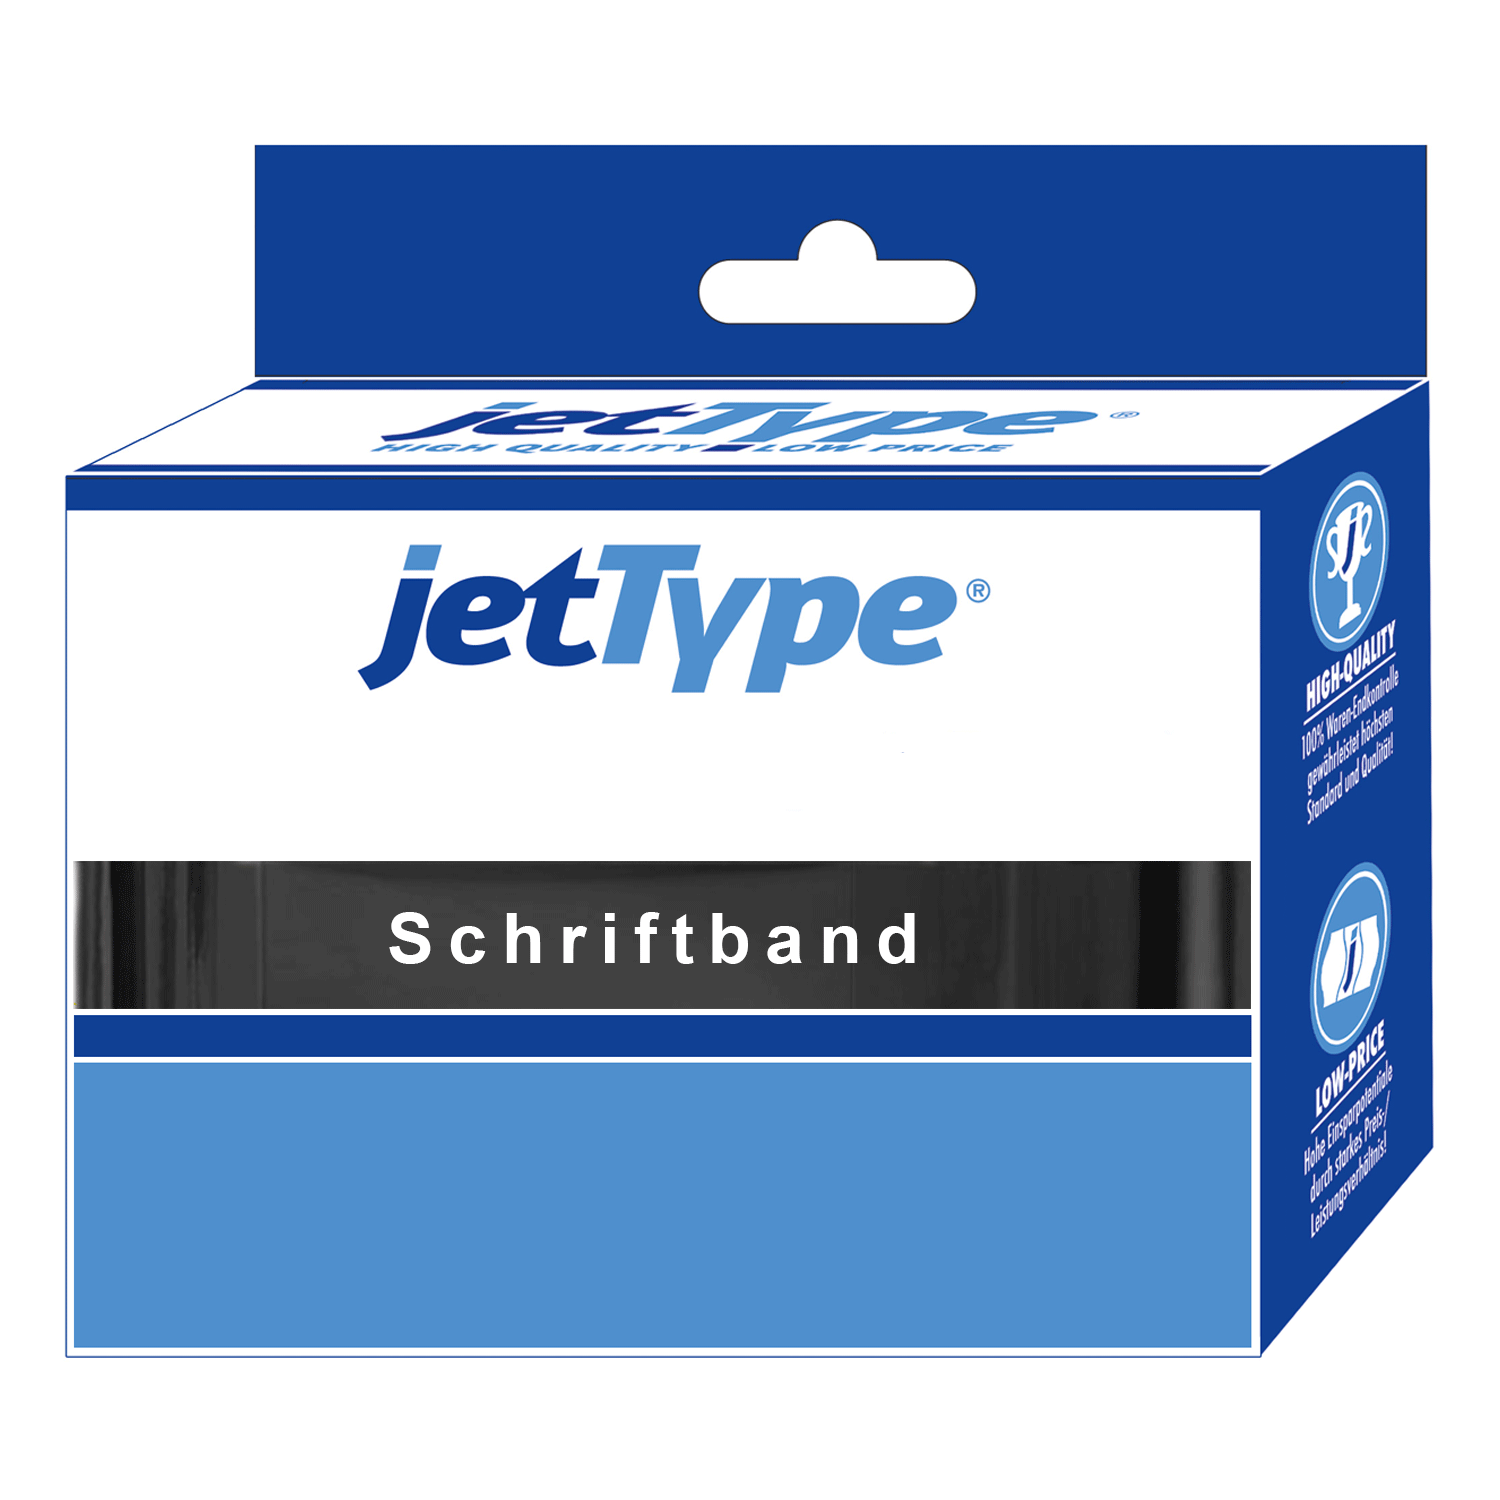 jetType Schriftband kompatibel zu Brother TZE-232 12 mm 8 m rot auf weiß laminiert